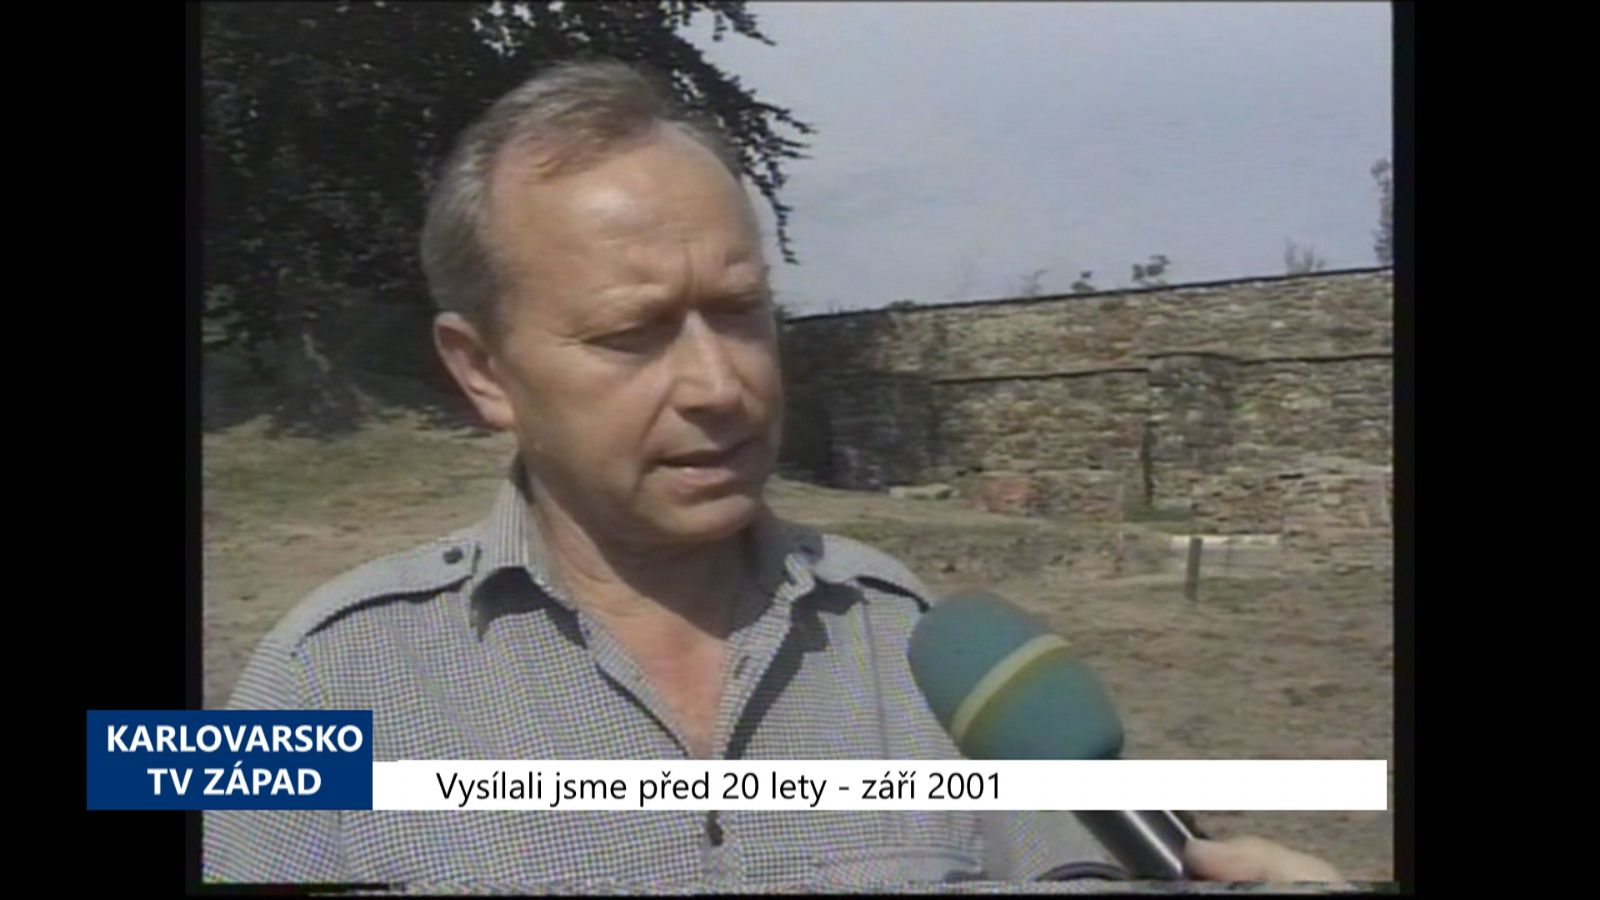 2001 – Cheb: Hrad zkoumají archeologové (TV Západ) 